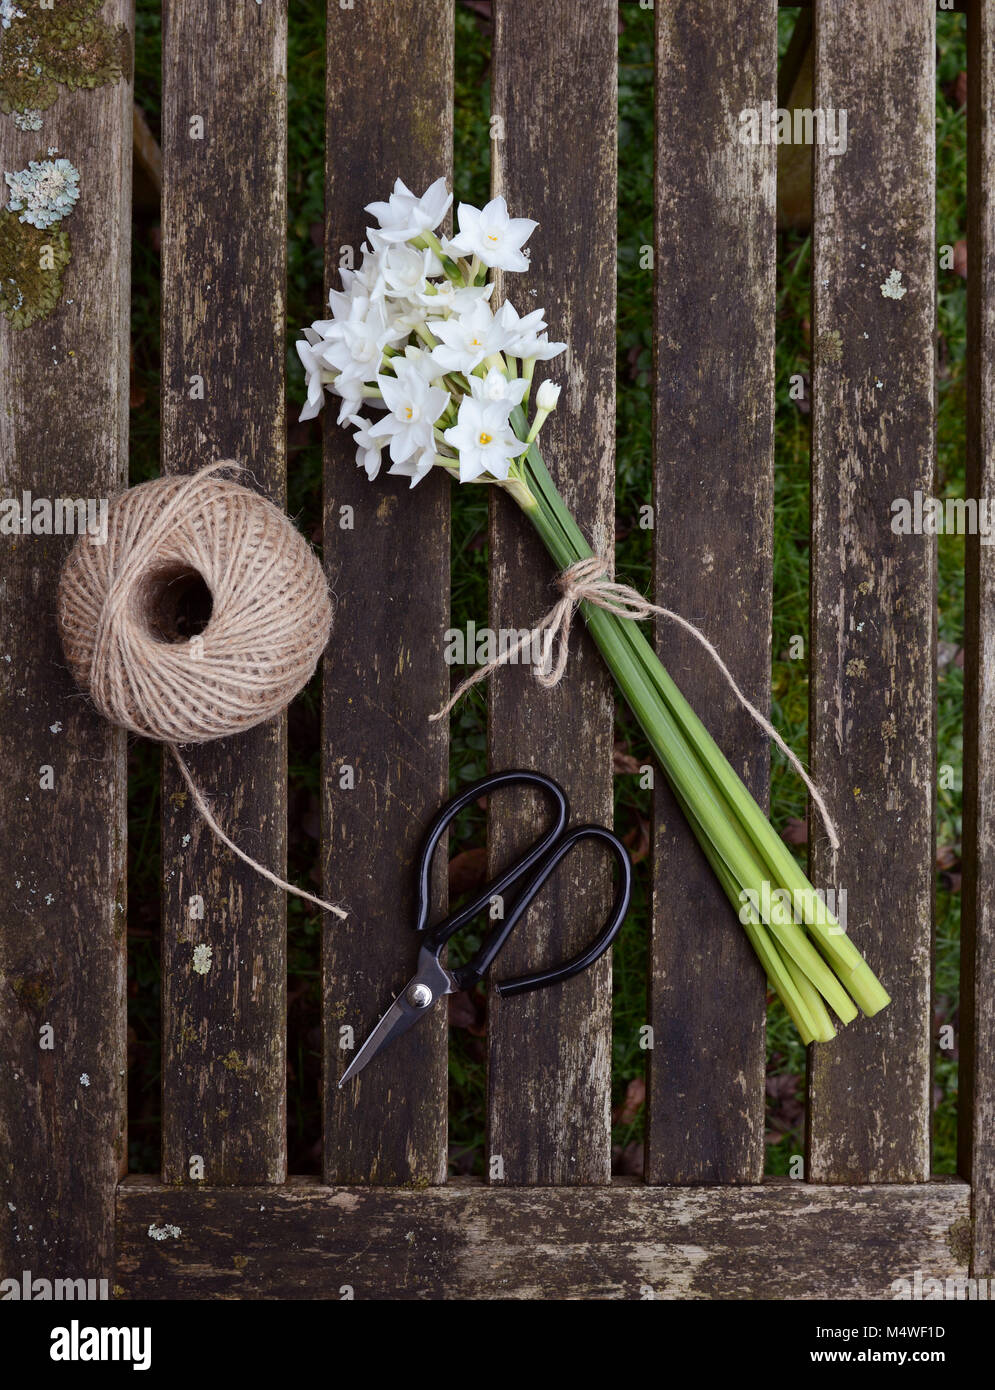 Narzissen Blumen mit Garn gebunden, mit einer Kugel aus Garten string und Schere auf einem holzstäbchen Hintergrund Stockfoto